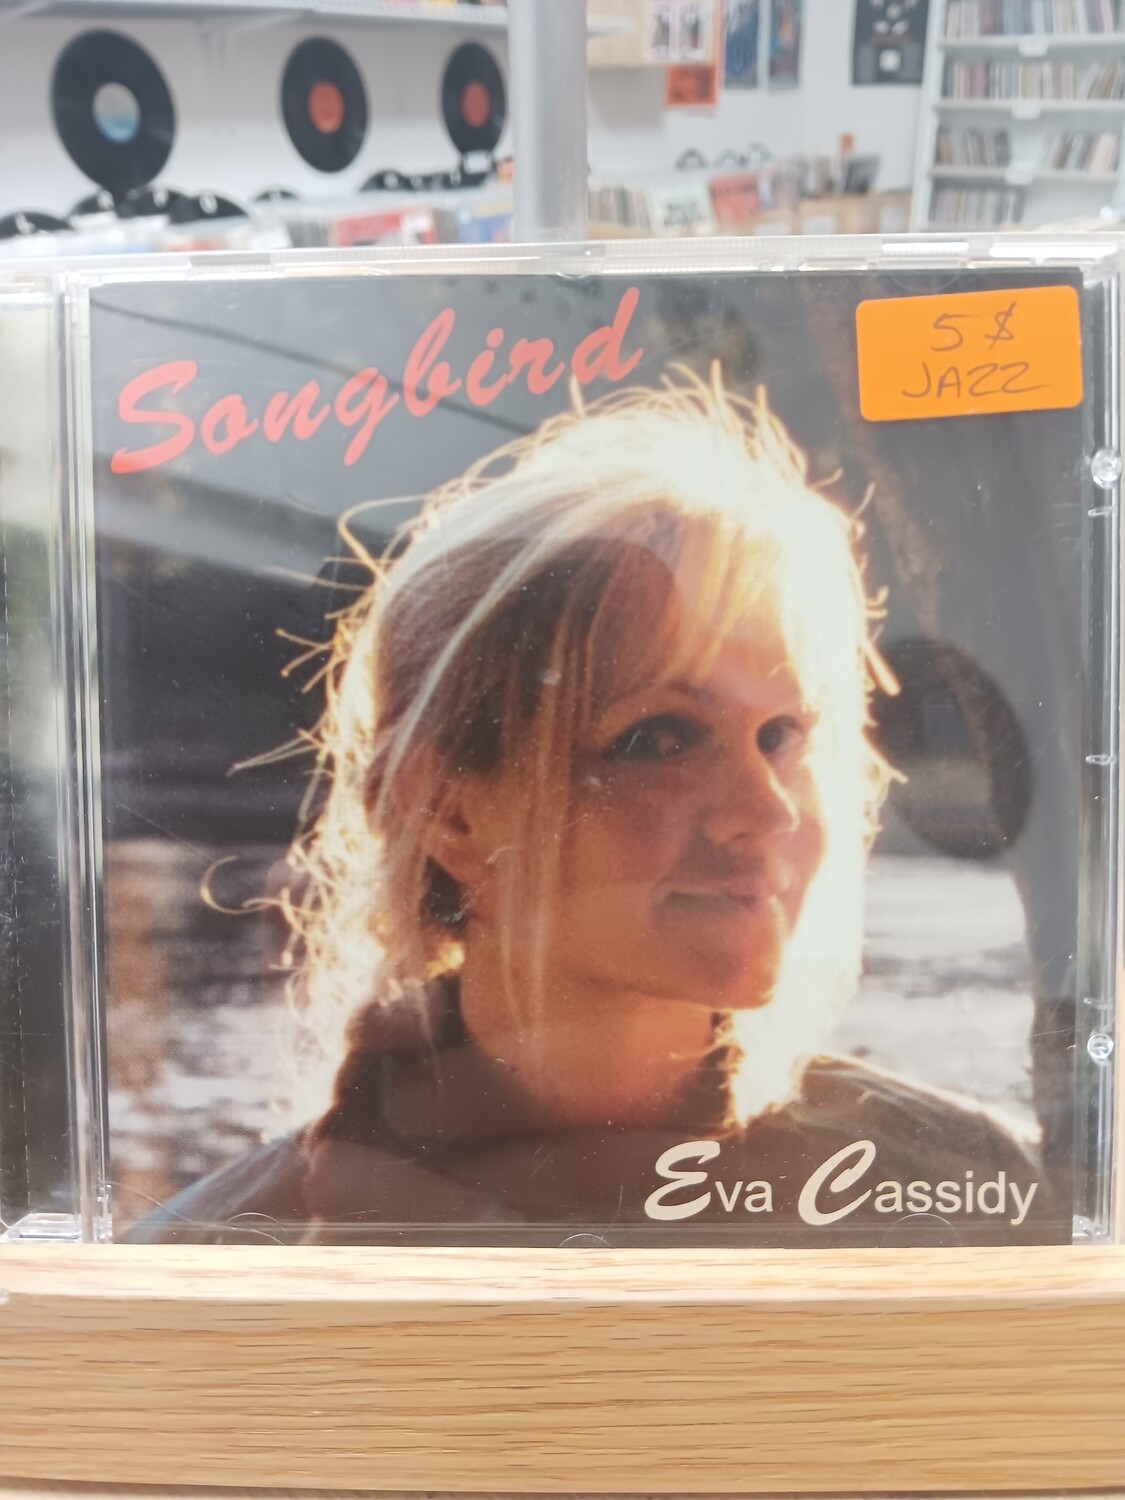 EVA CASSIDY - Songbird (CD)